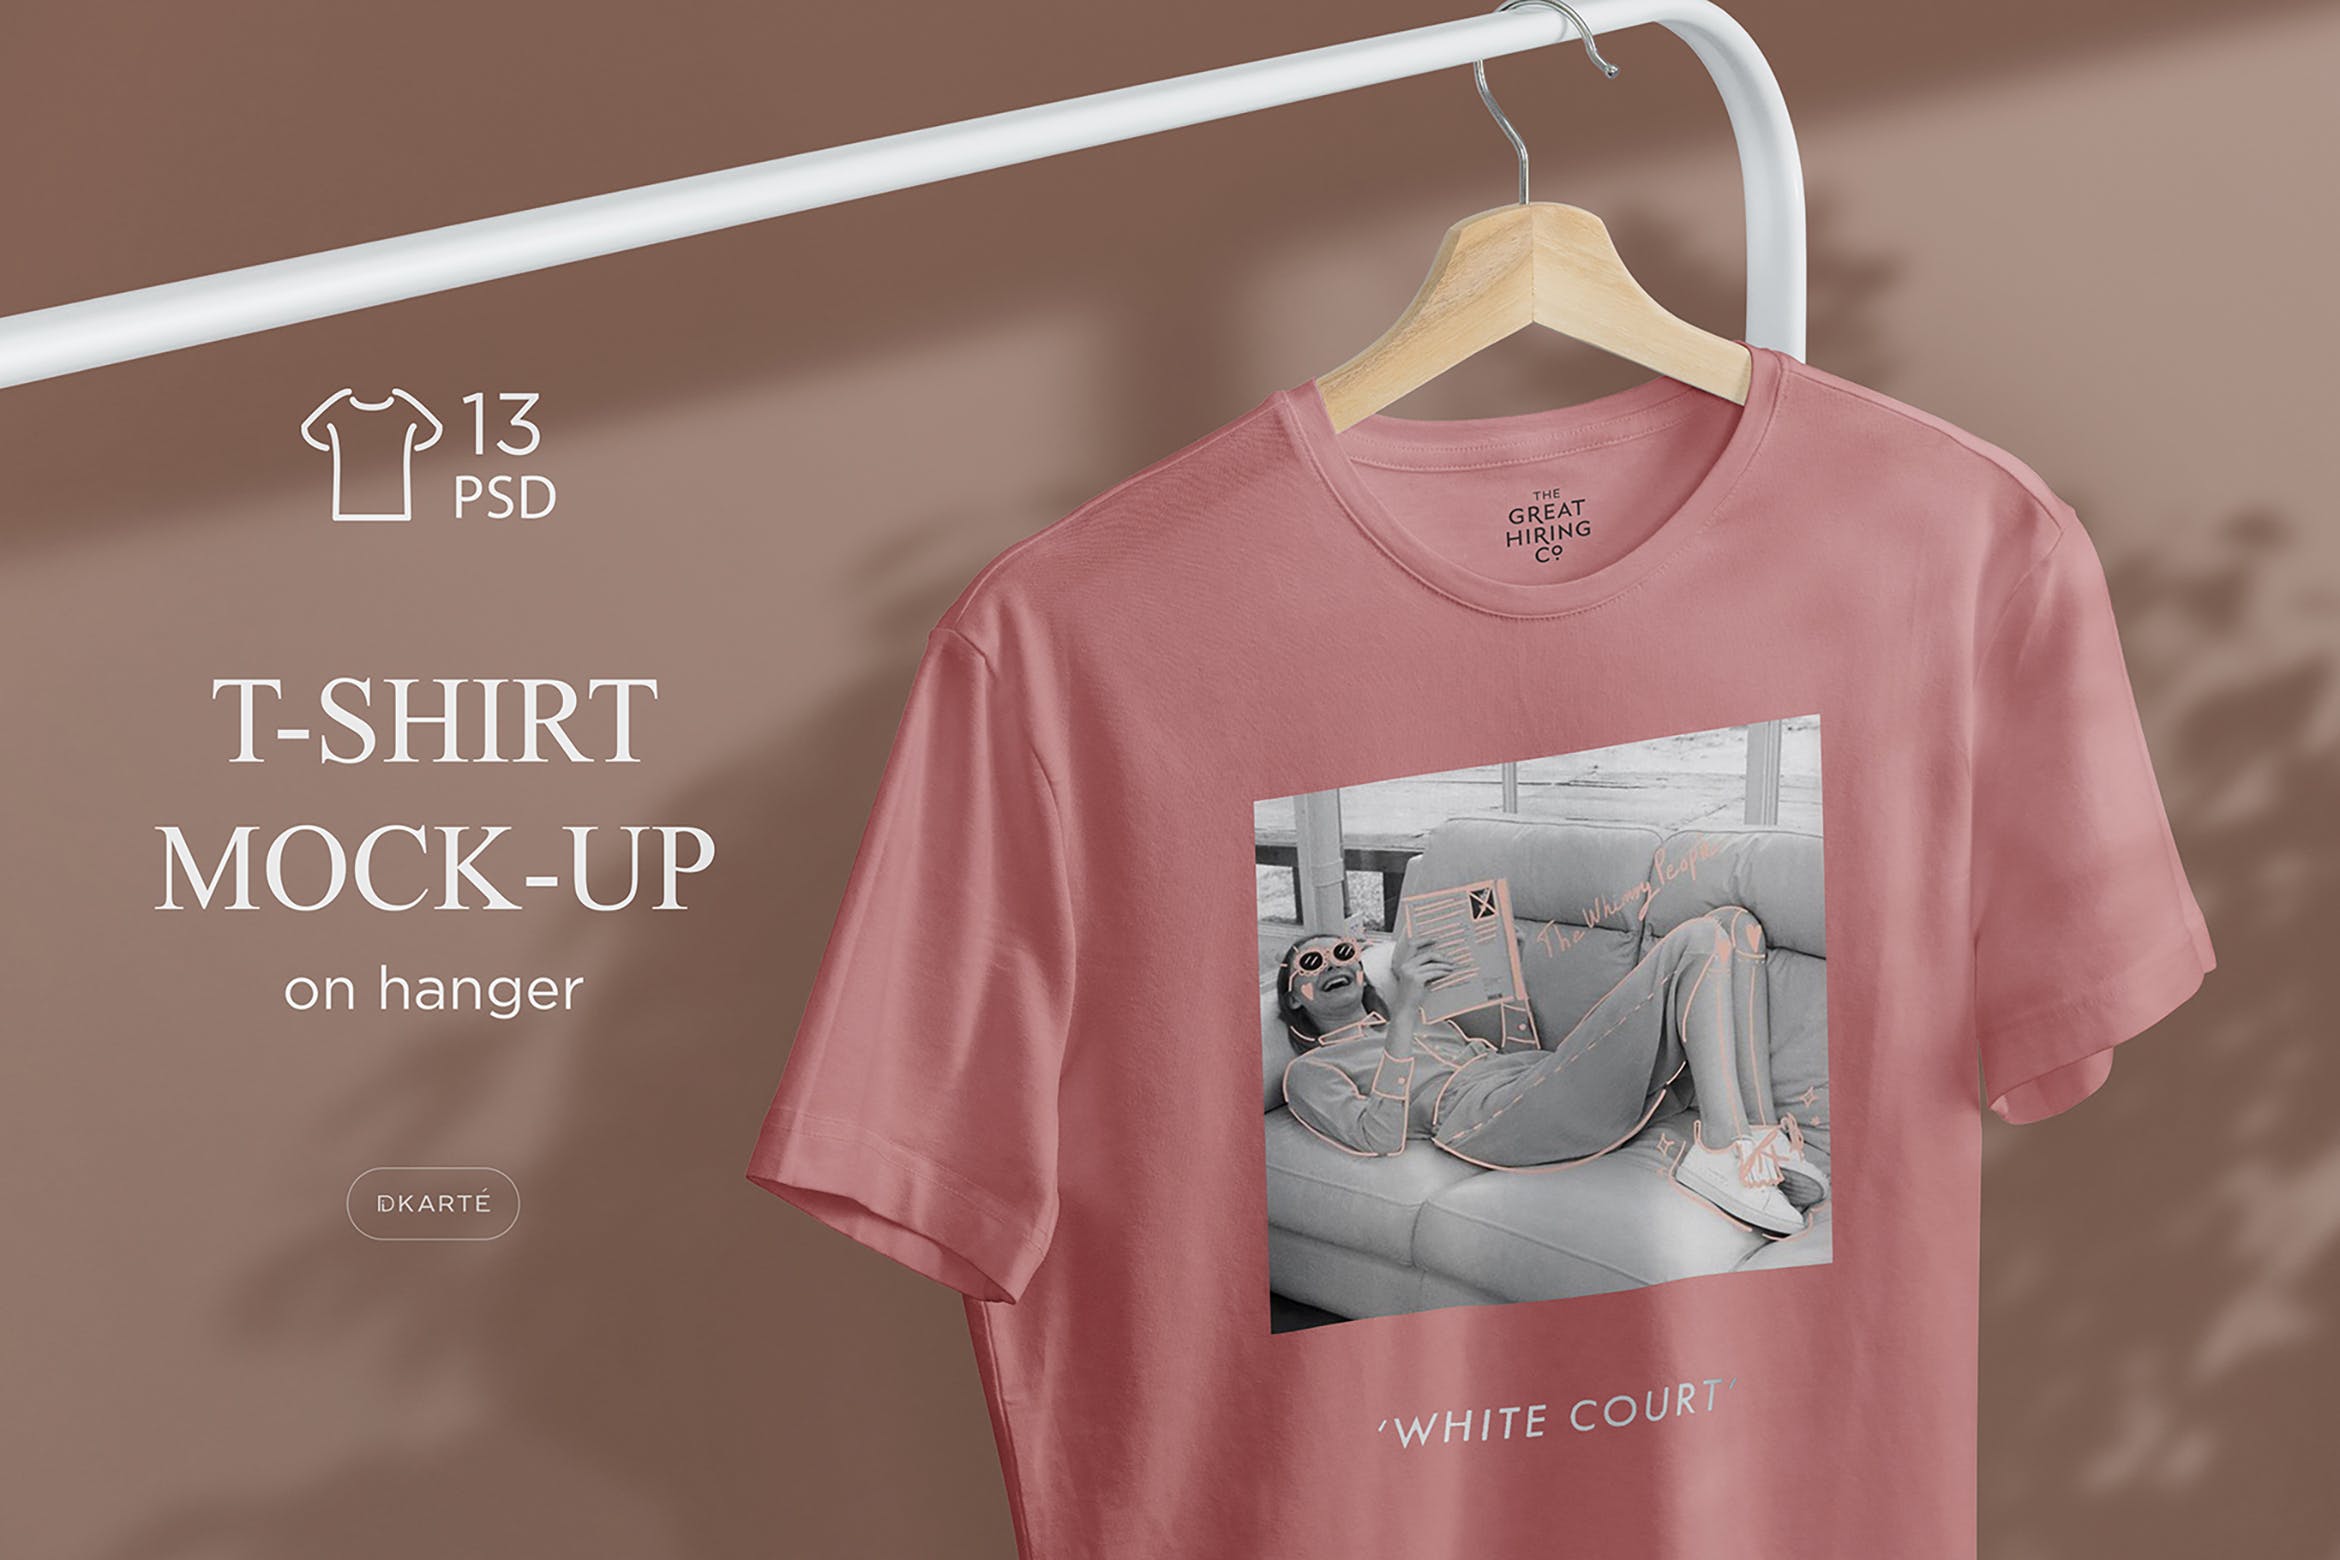 简易晾衣架T恤设计效果图样机蚂蚁素材精选 T-Shirt Mock-Up on Hanger插图